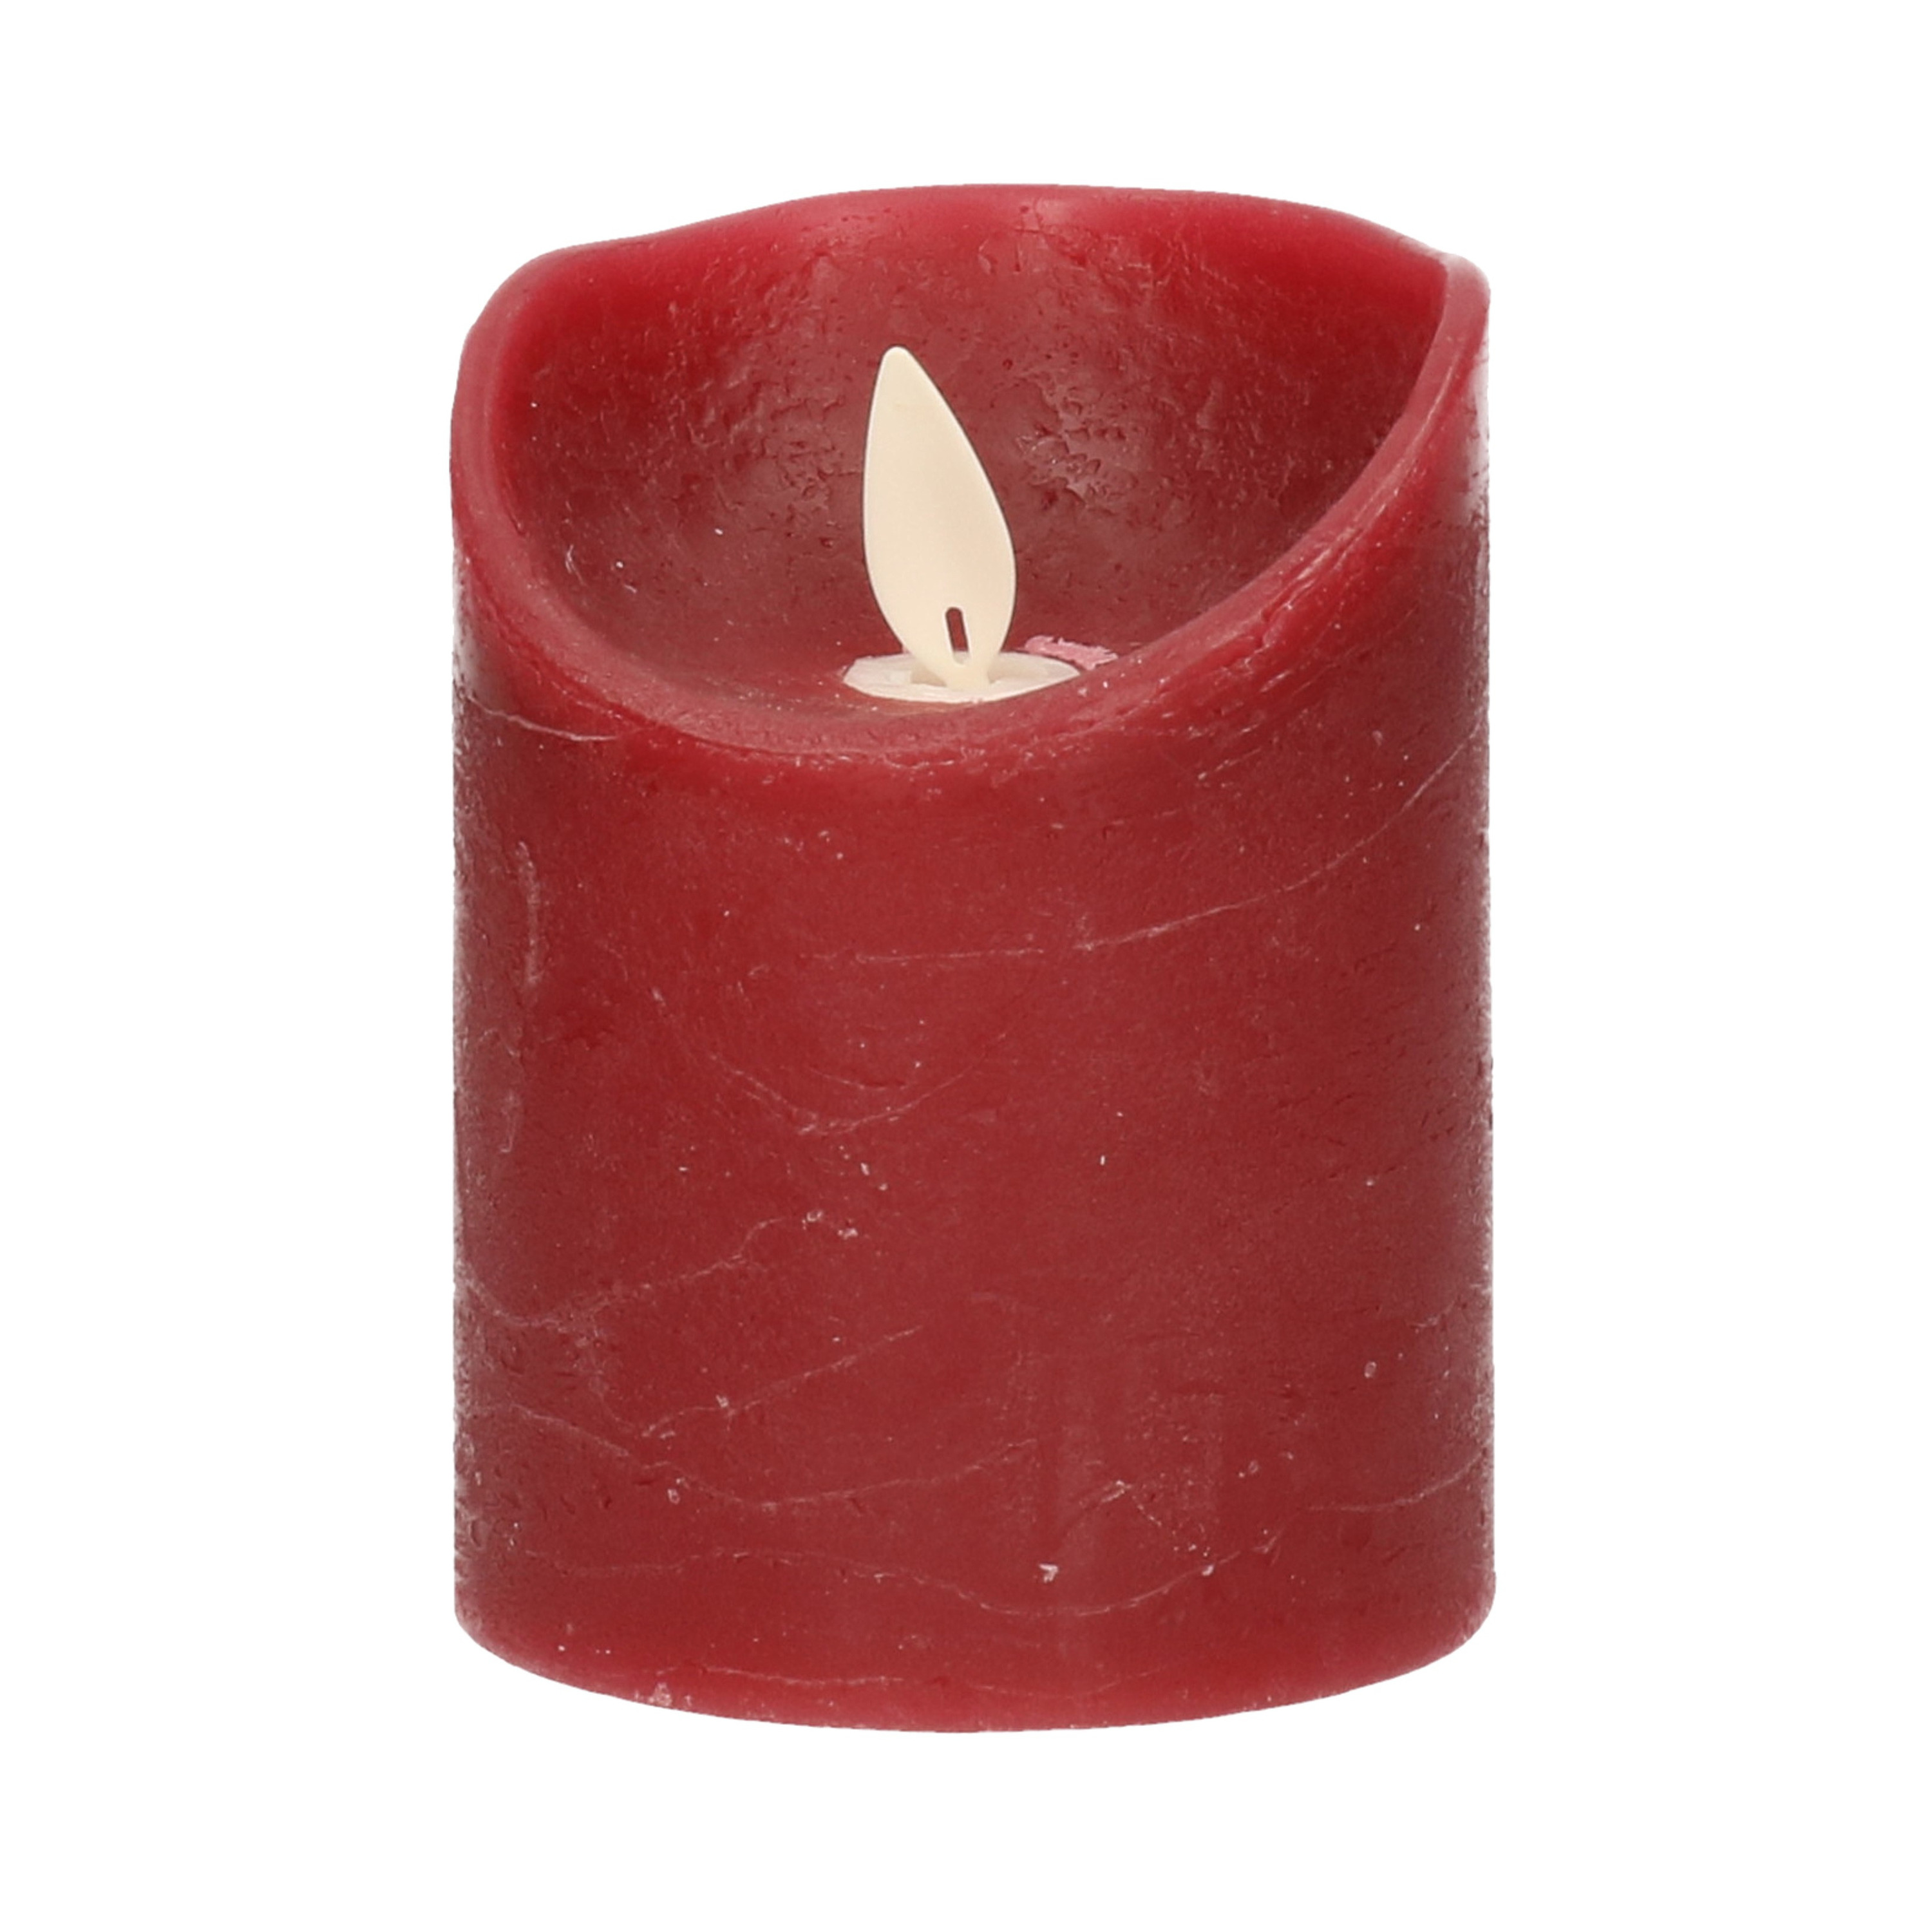 1x Bordeaux rode LED kaarsen-stompkaarsen met bewegende vlam 10 cm